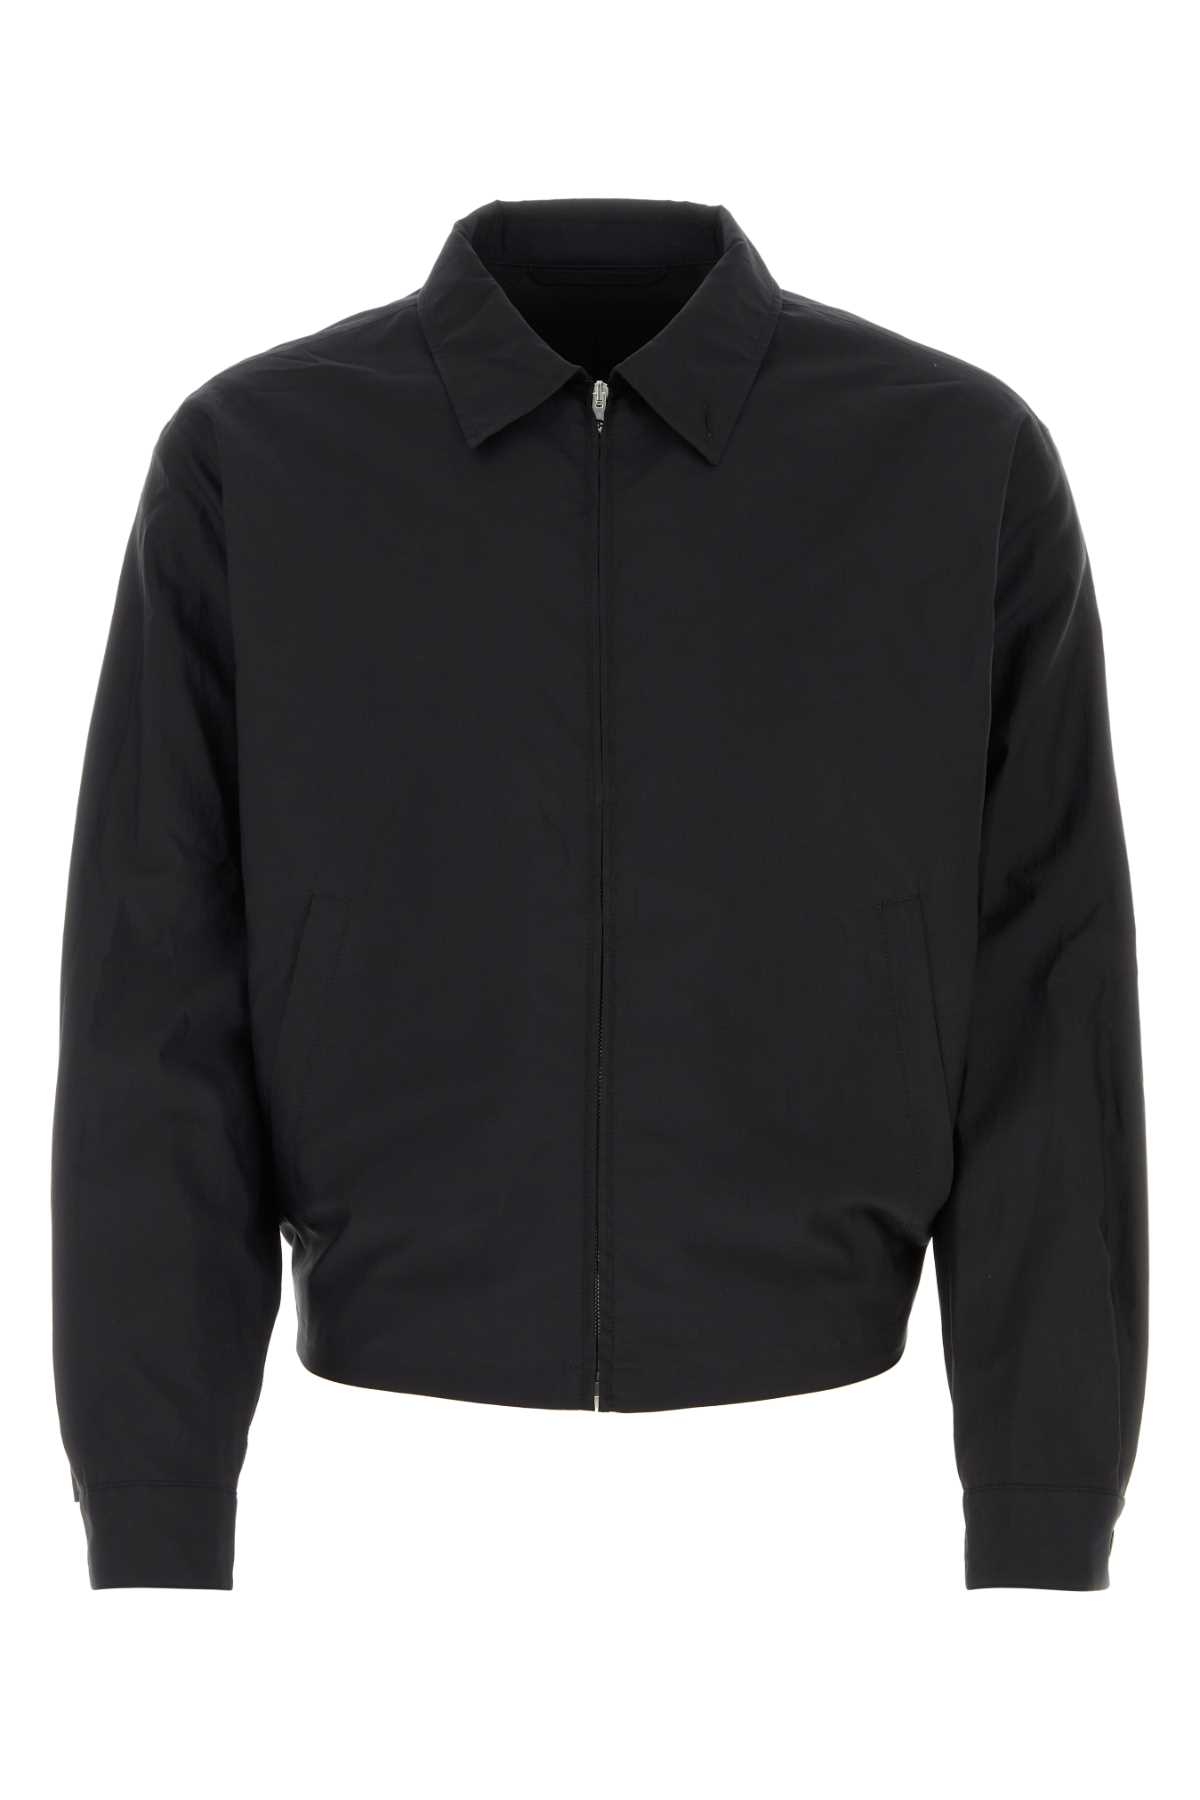 Shop Lemaire Black Cotton Blend Jacket